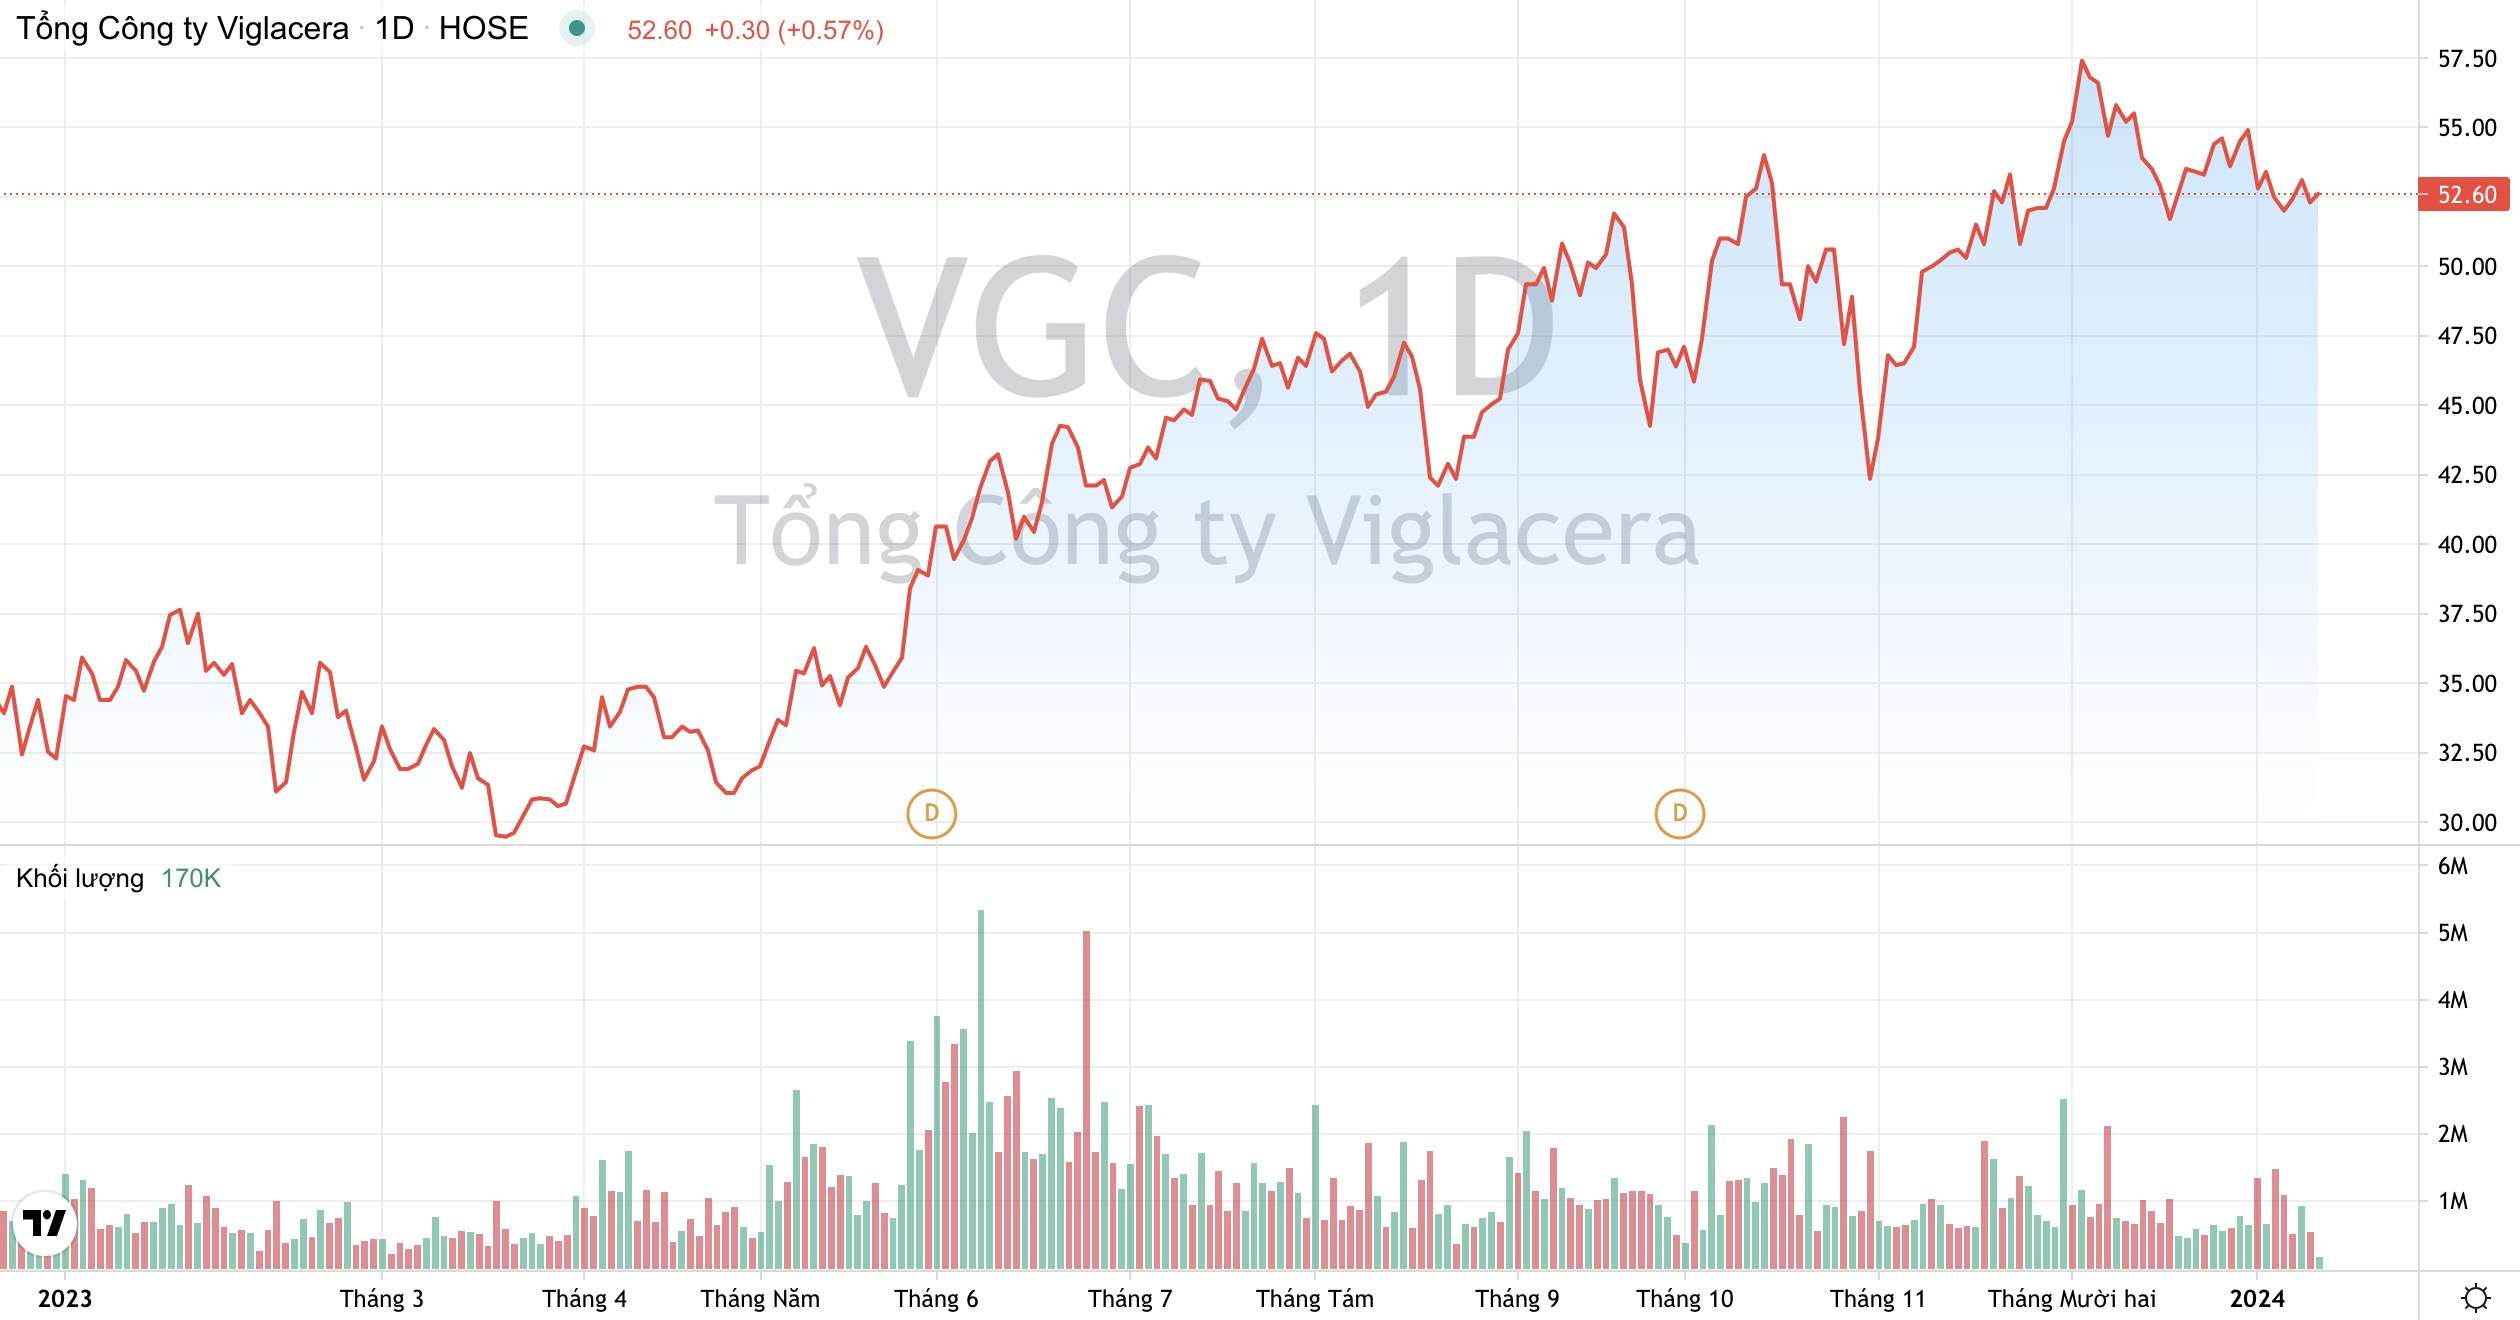 Các khu công nghiệp của Tổng công ty Viglacera VGC 'hút' hơn 16 tỷ USD vốn FDI 2